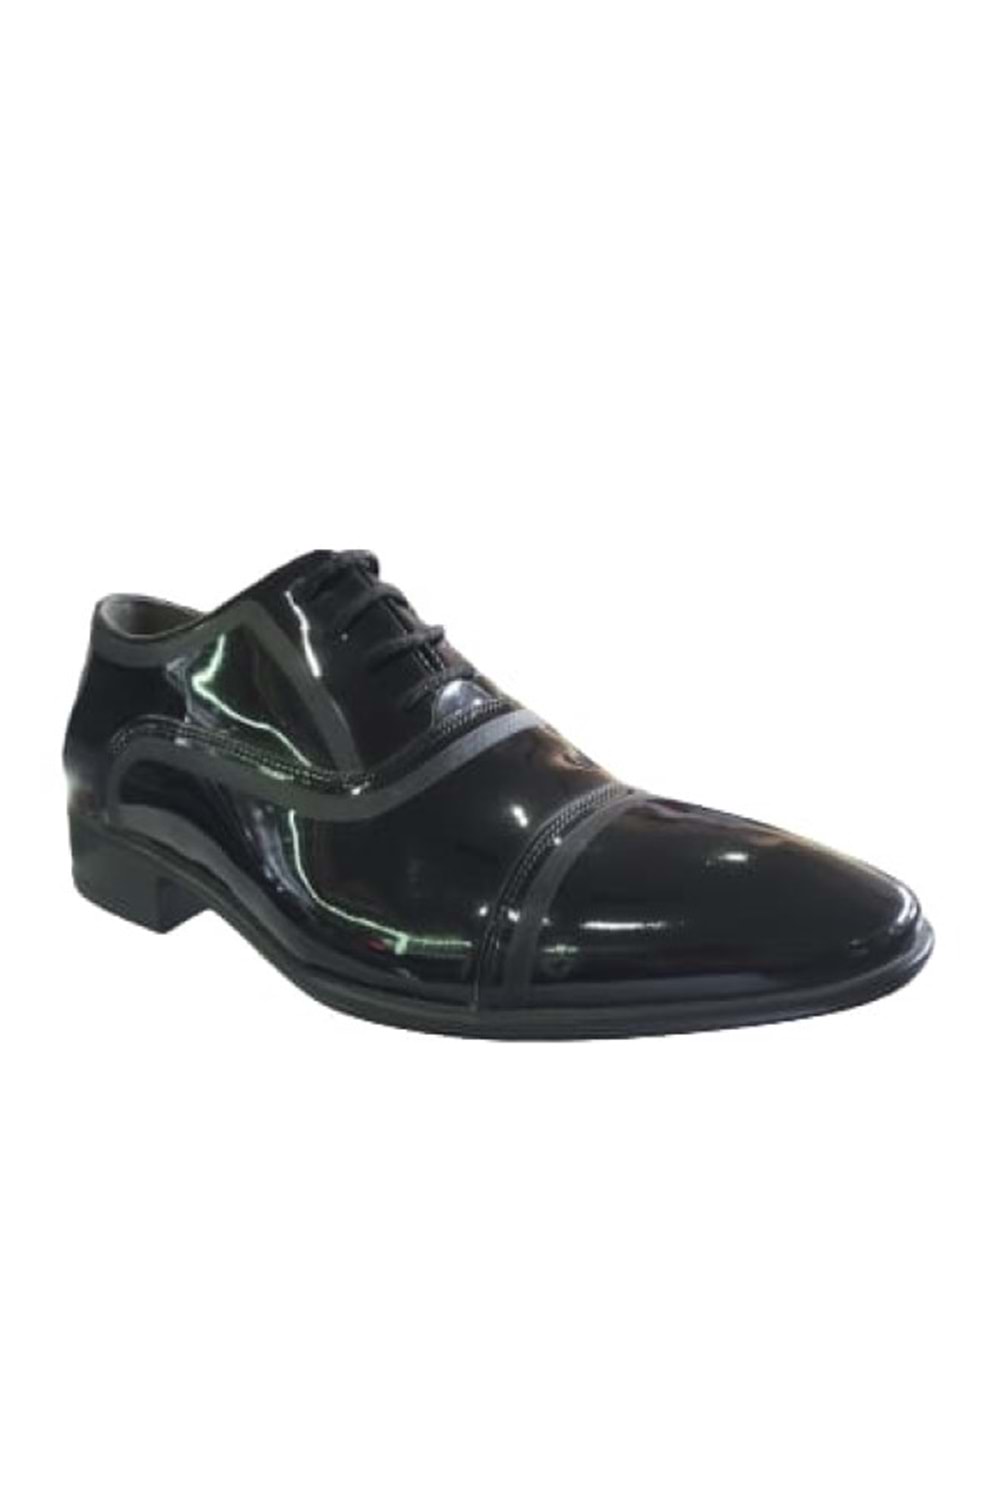 Wonder 2160 Erkek Rugan Deri Klasik Ayakkabı - Siyah